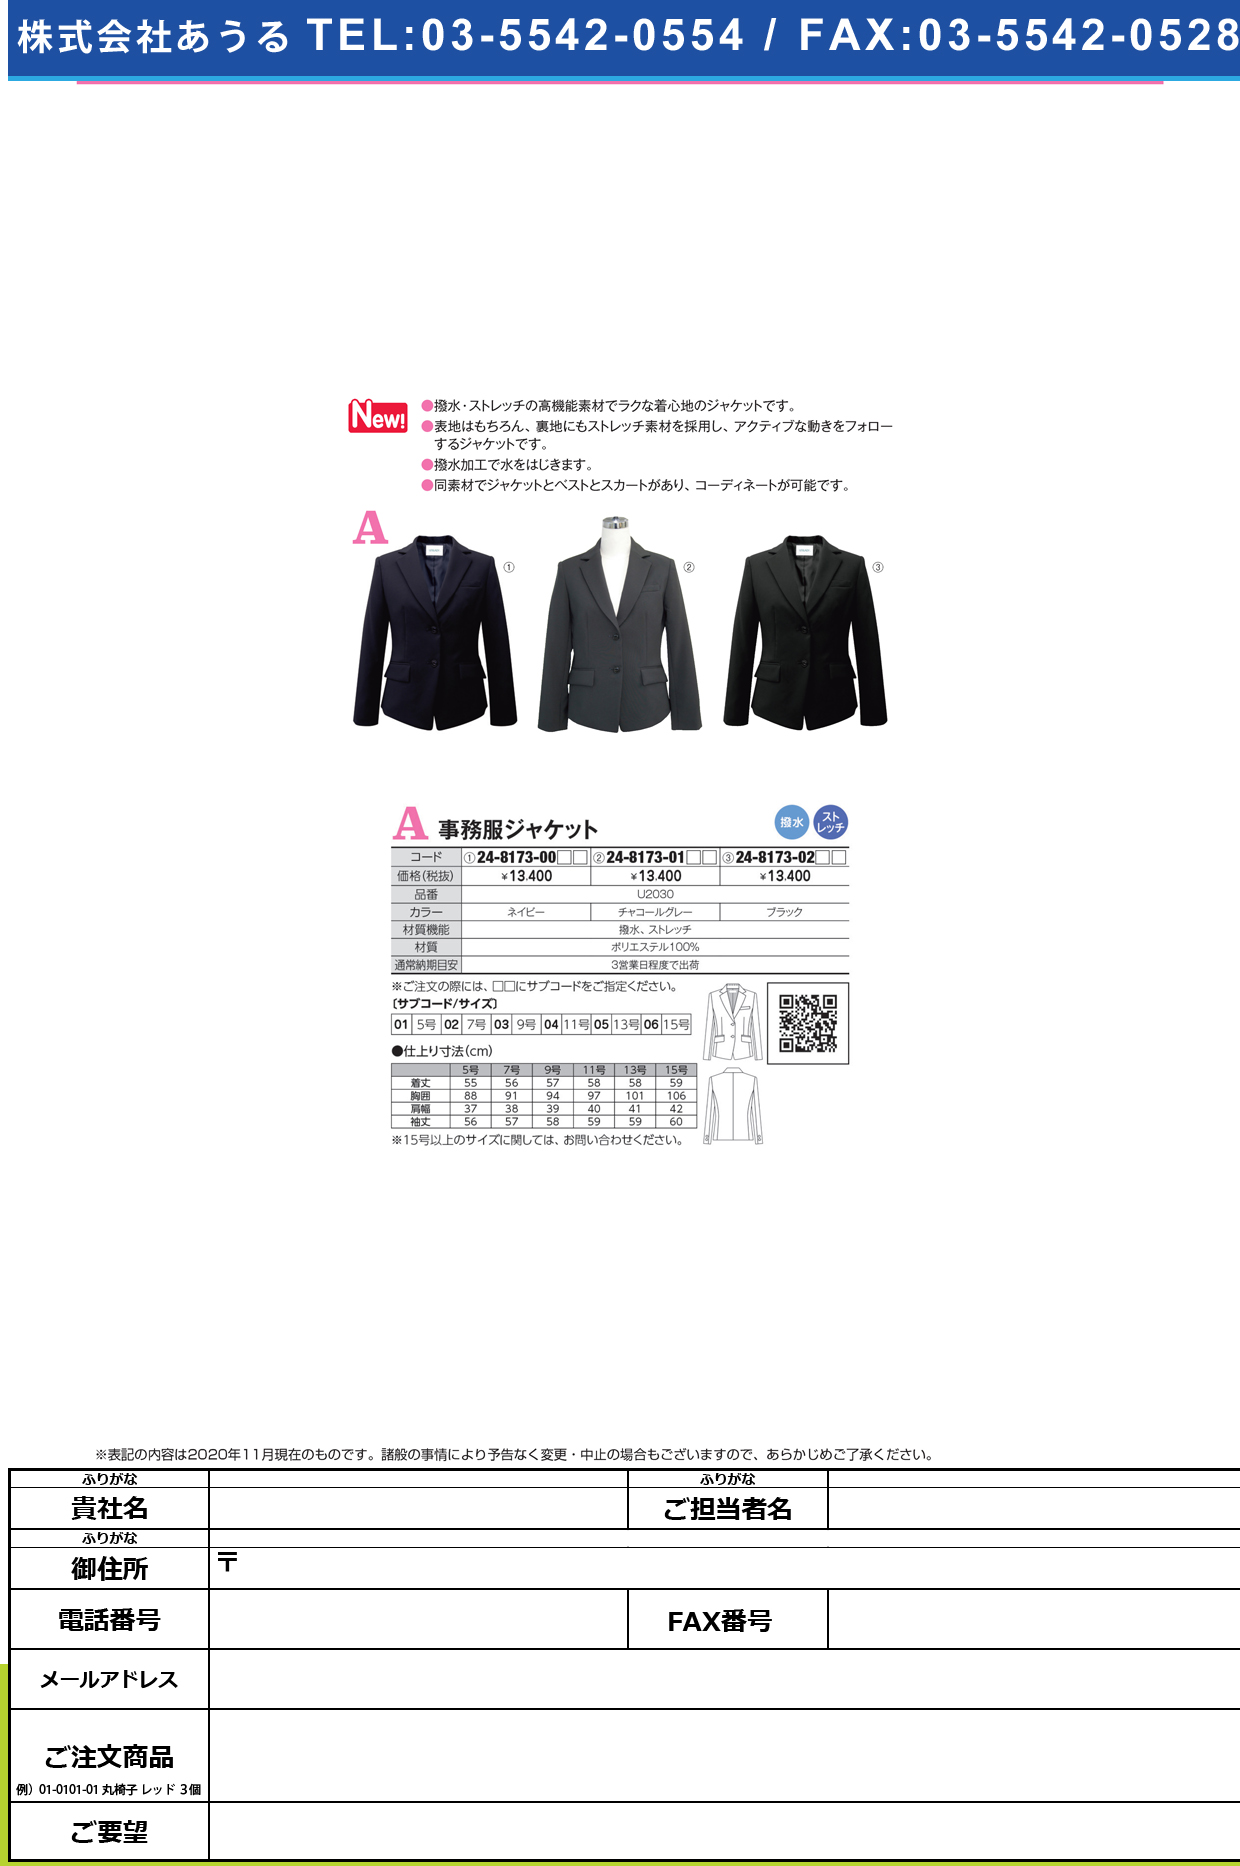 事務服ジャケット U2030(ブラック)U2030(ﾌﾞﾗｯｸ)１１(24-8173-02-04)【ヤギコーポレーション】(販売単位:1)